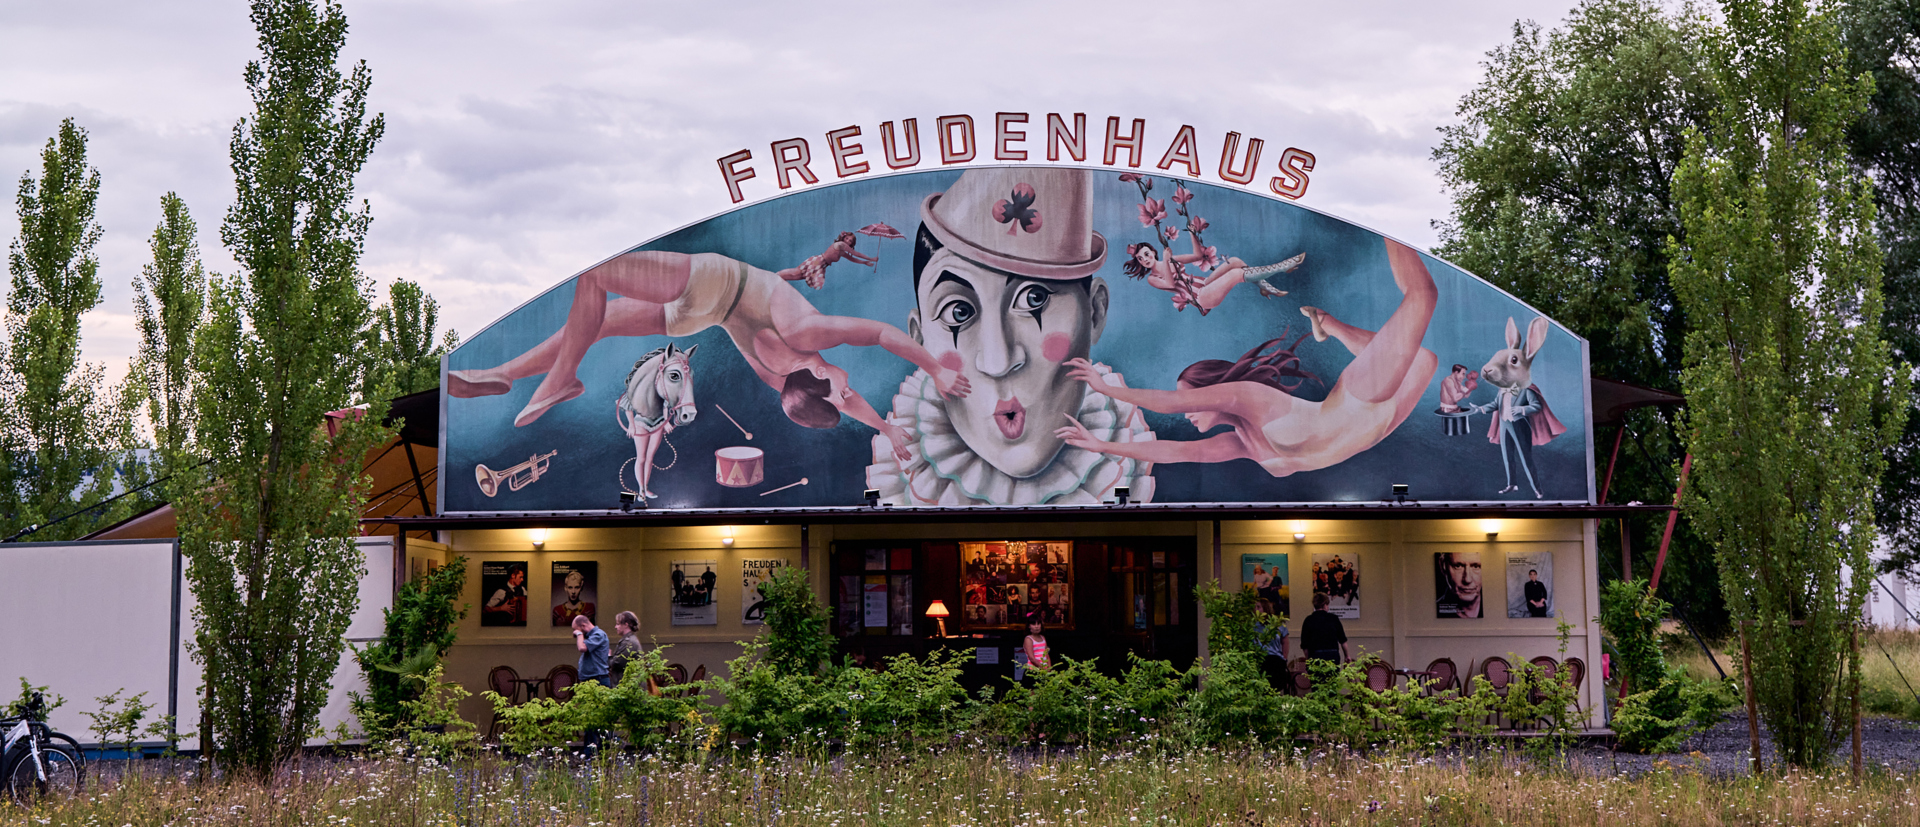 Freudenhaus (Miro)